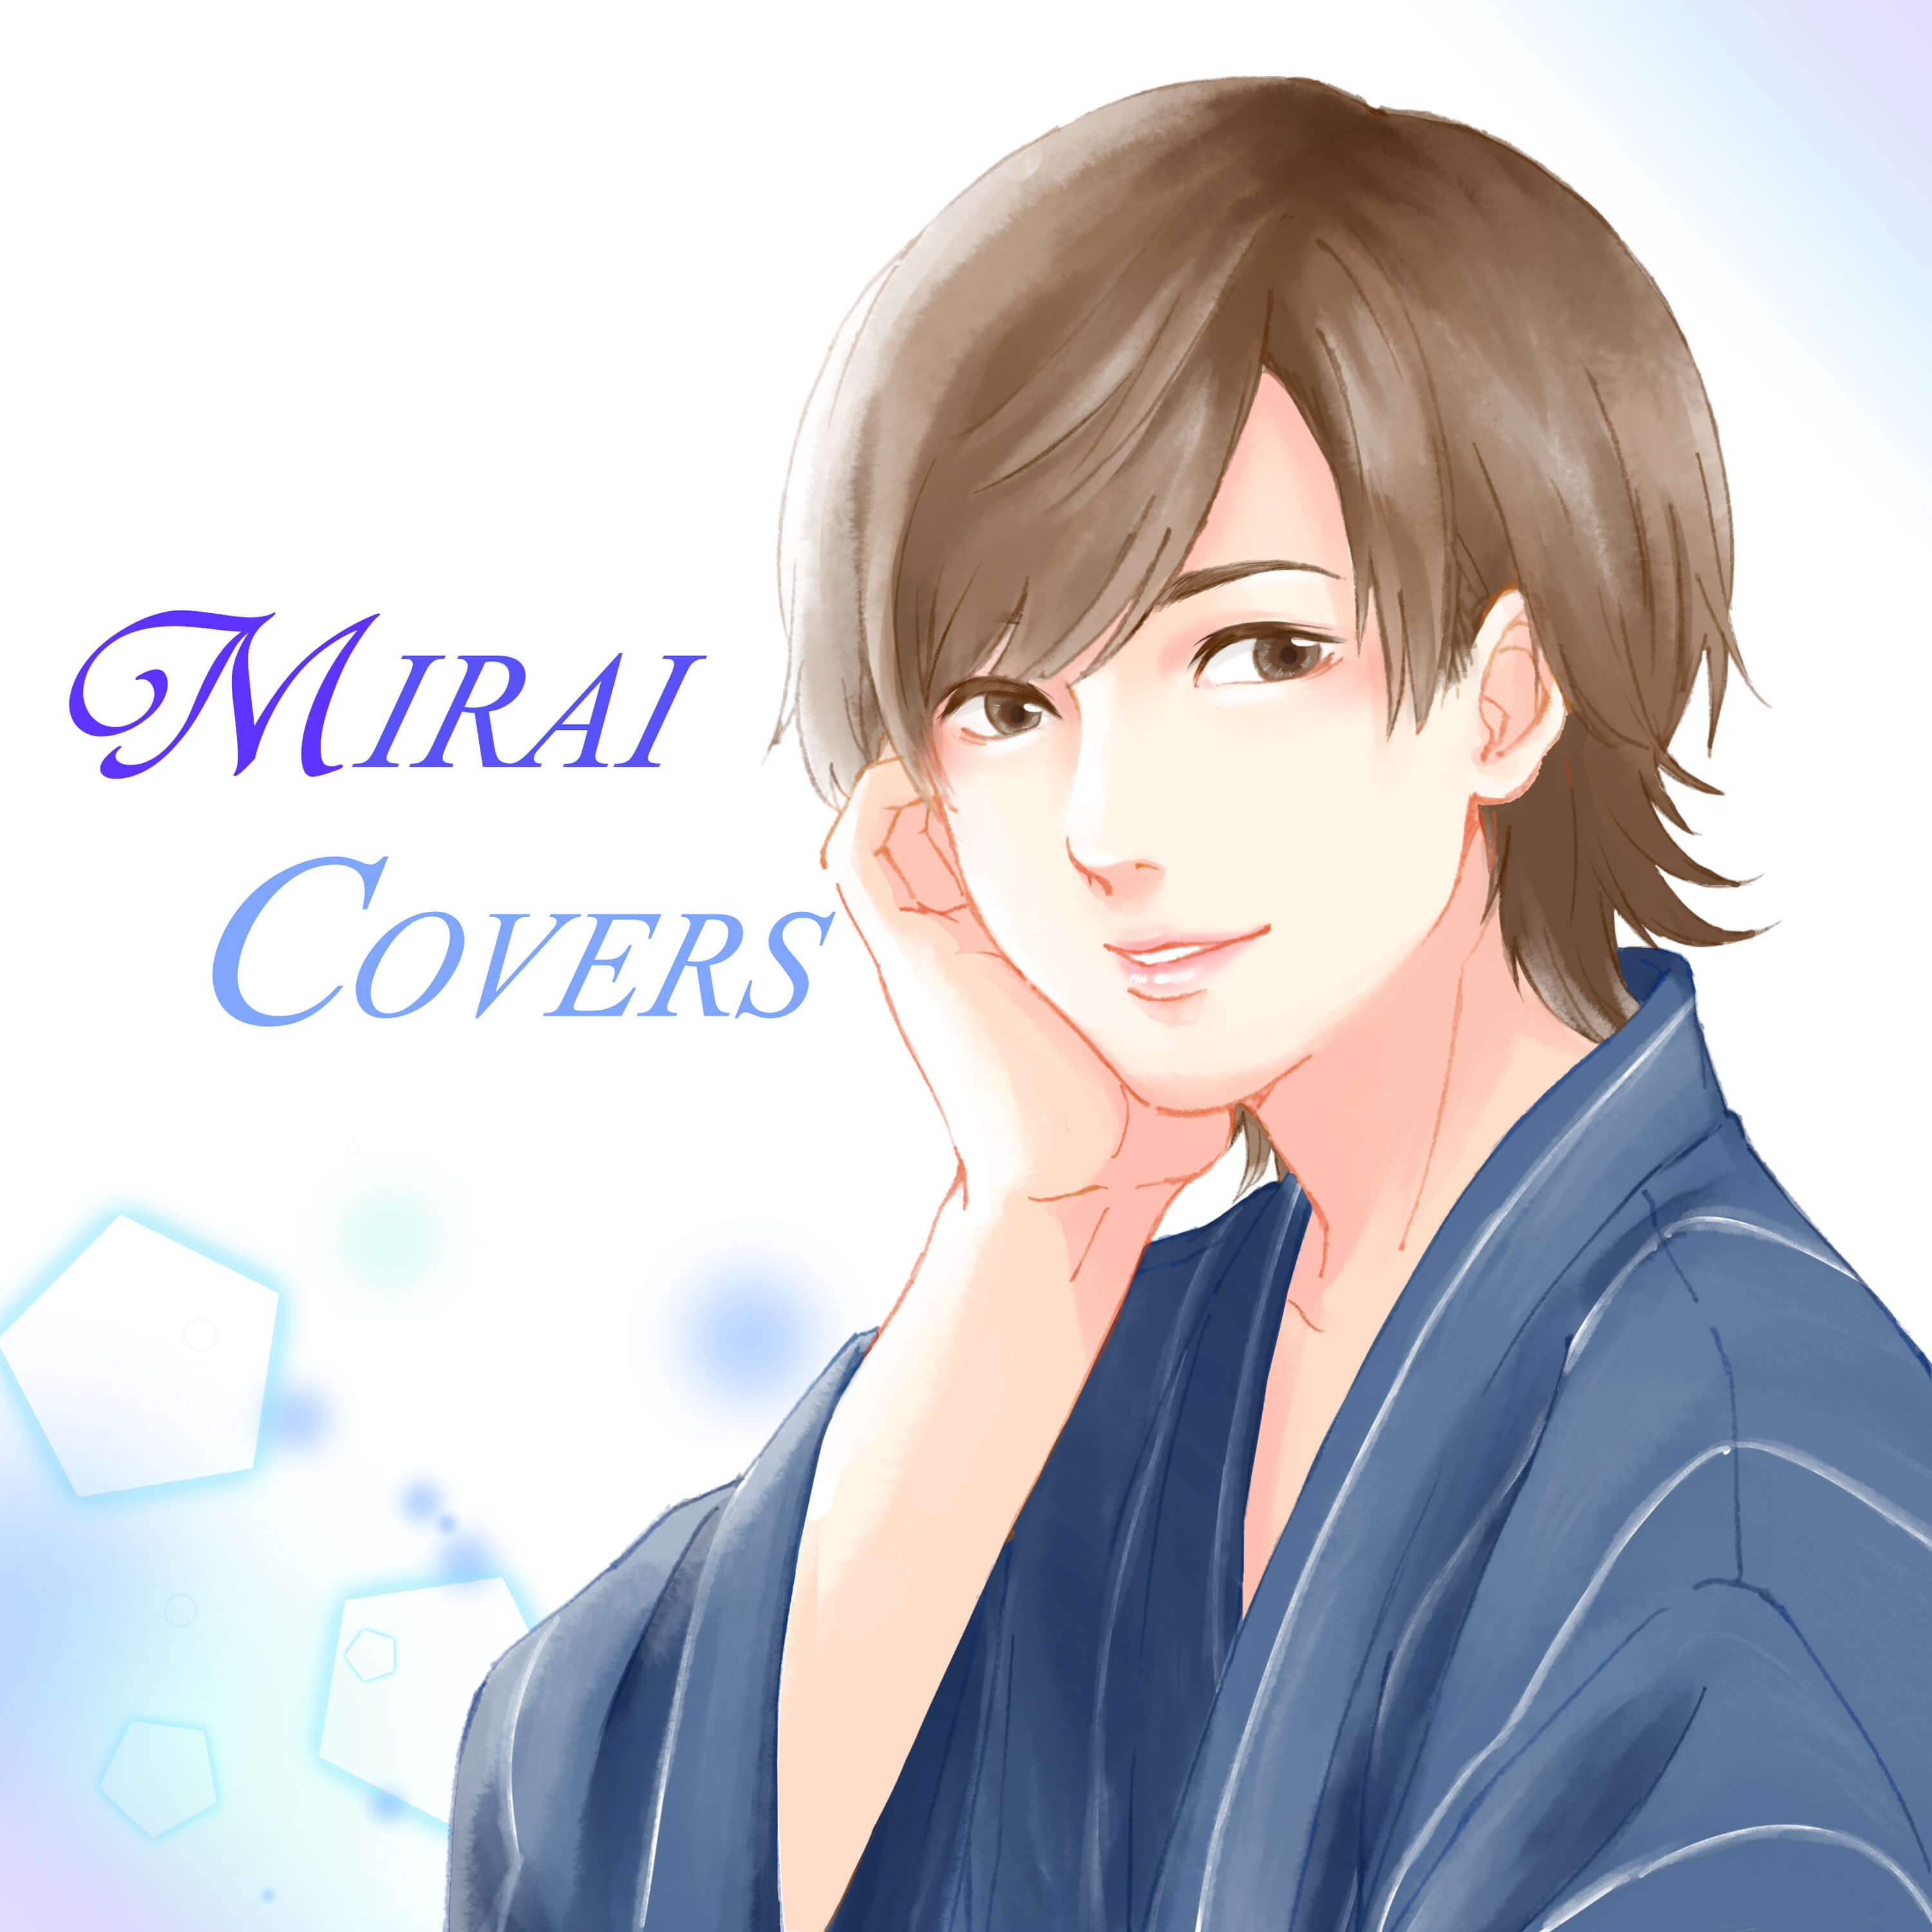 人気音楽YouTuber・Kobasoloと“イケボ”未来(ザ・フーパーズ)の強力タッグが1stEP「MIRAI COVERS」を語る